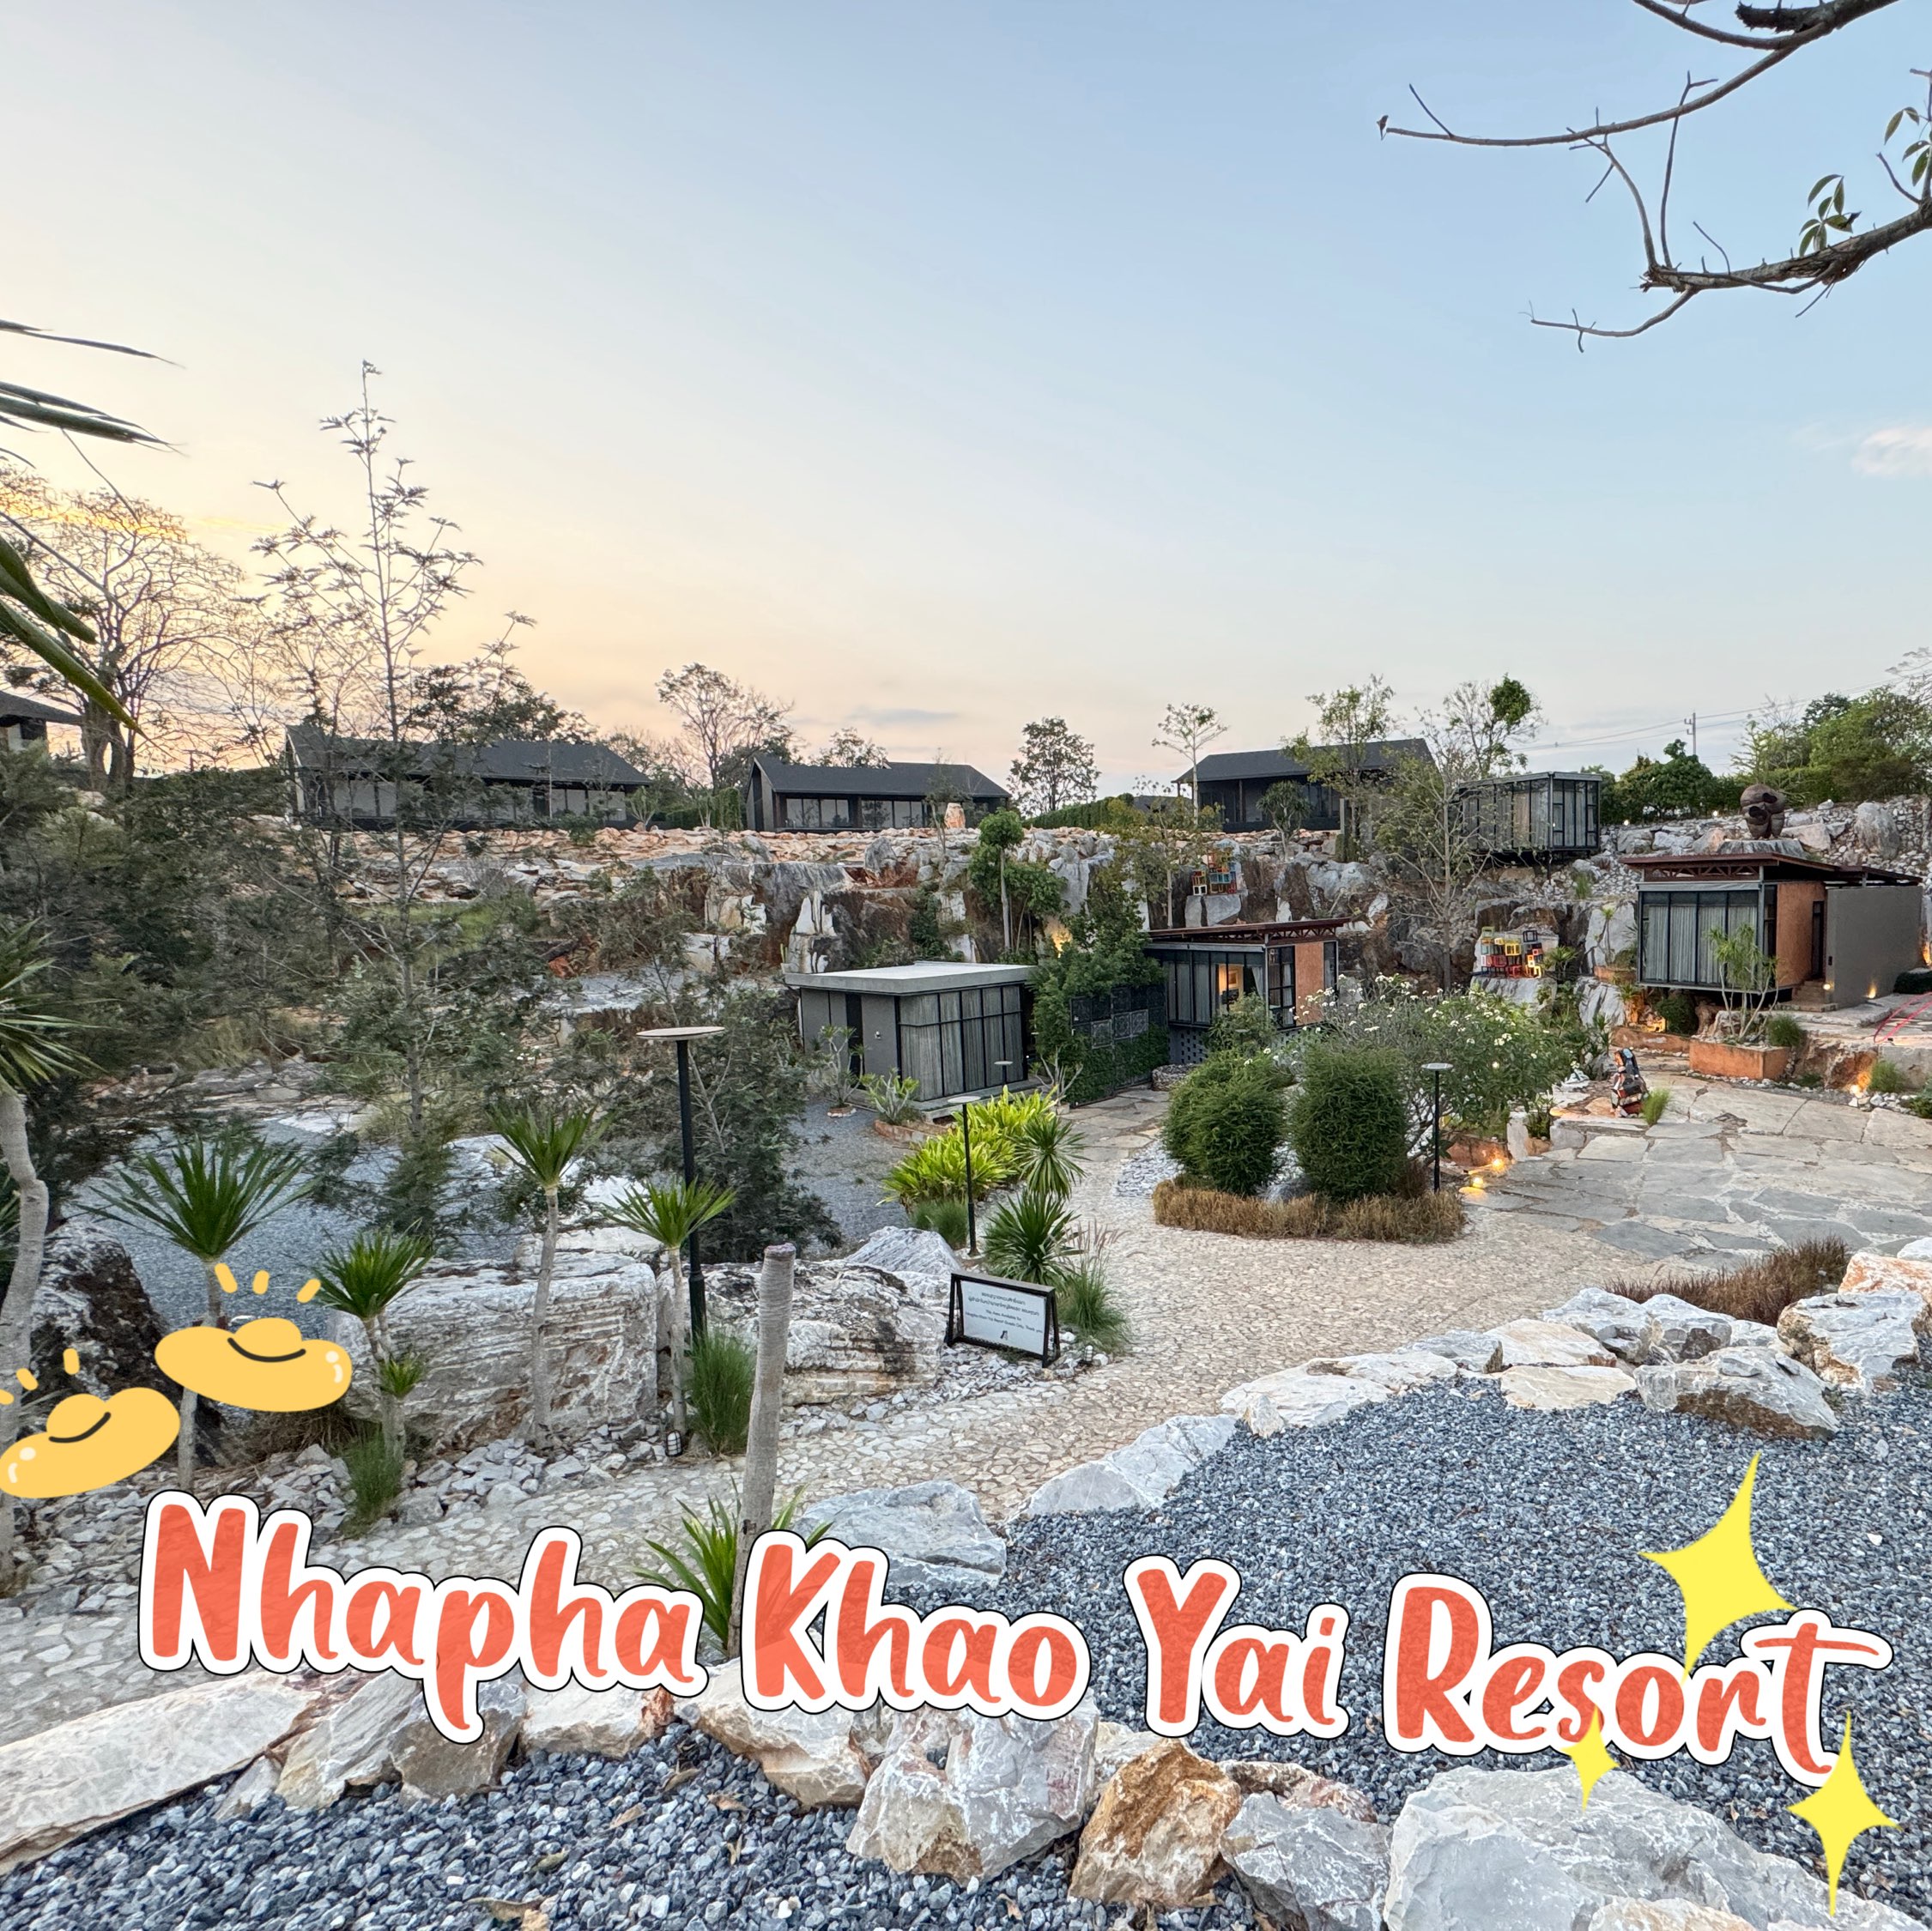 钉一个美丽的酒店📍 Nhapha Khao Yai Resort